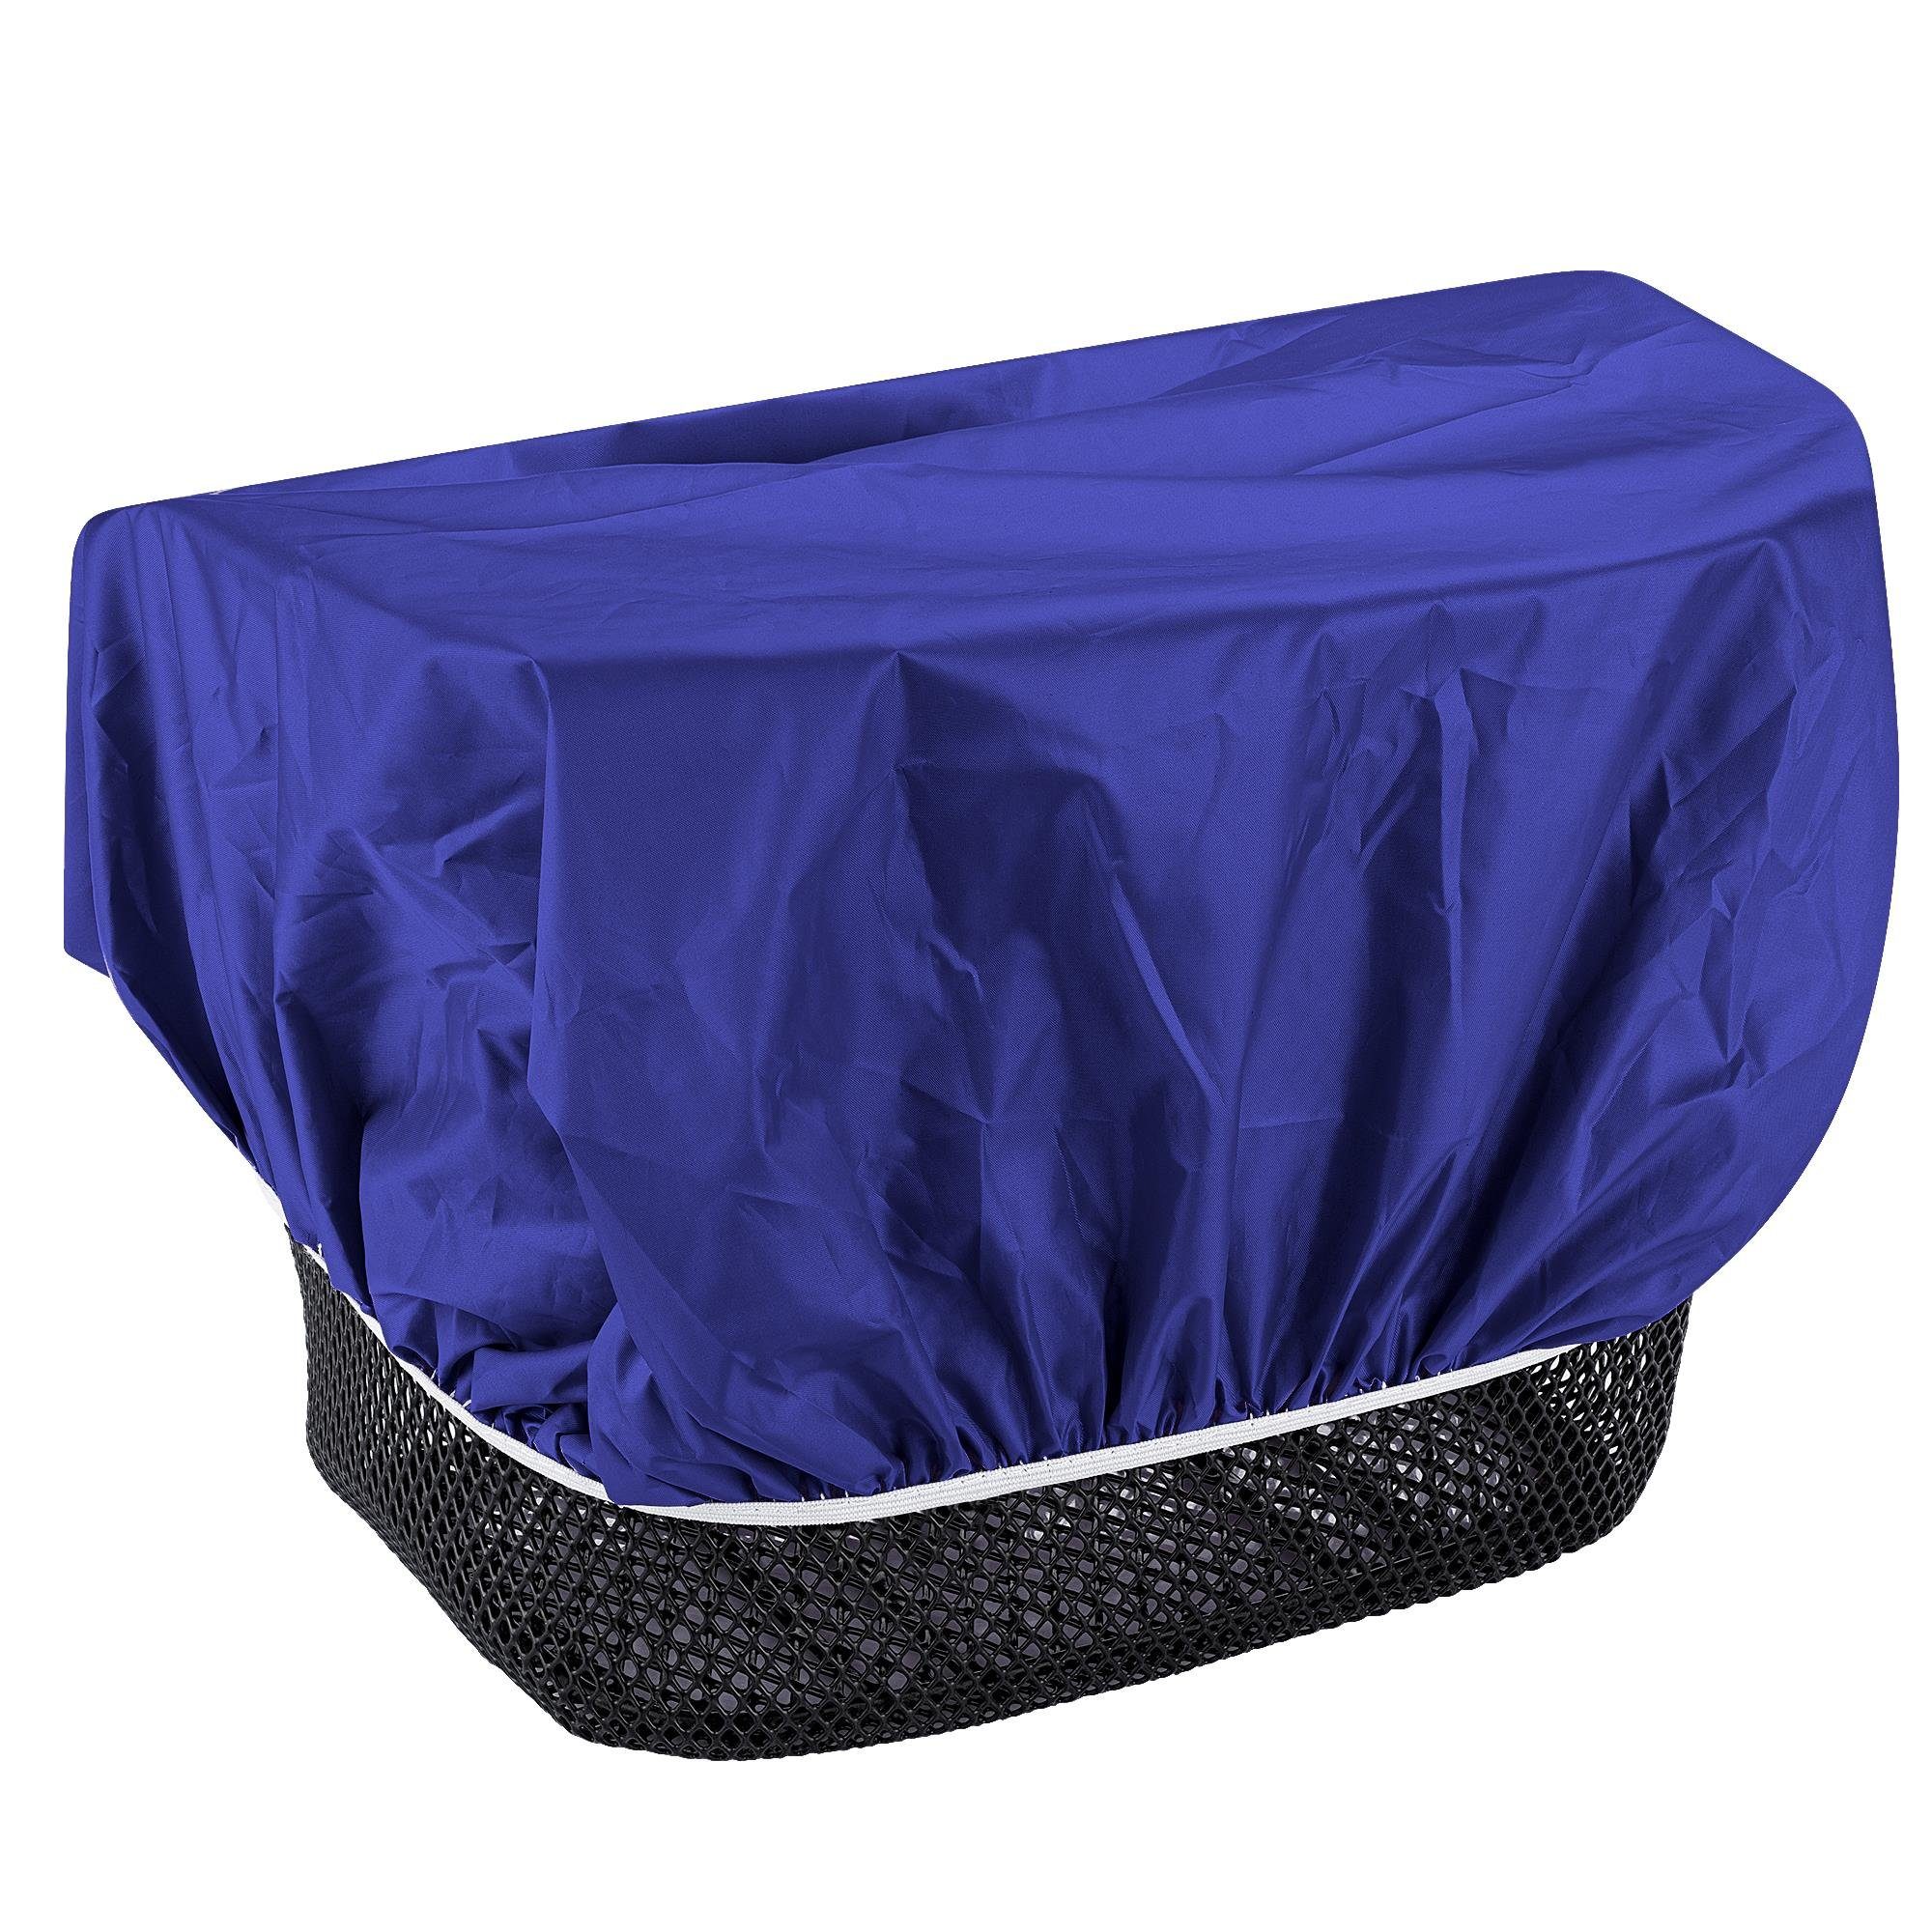 EAZY CASE Fahrradkorb Universal Regenschutz für Korb, Fahrradkorb Regenhülle für Körbe wasserabweisend Korbüberzug Blau